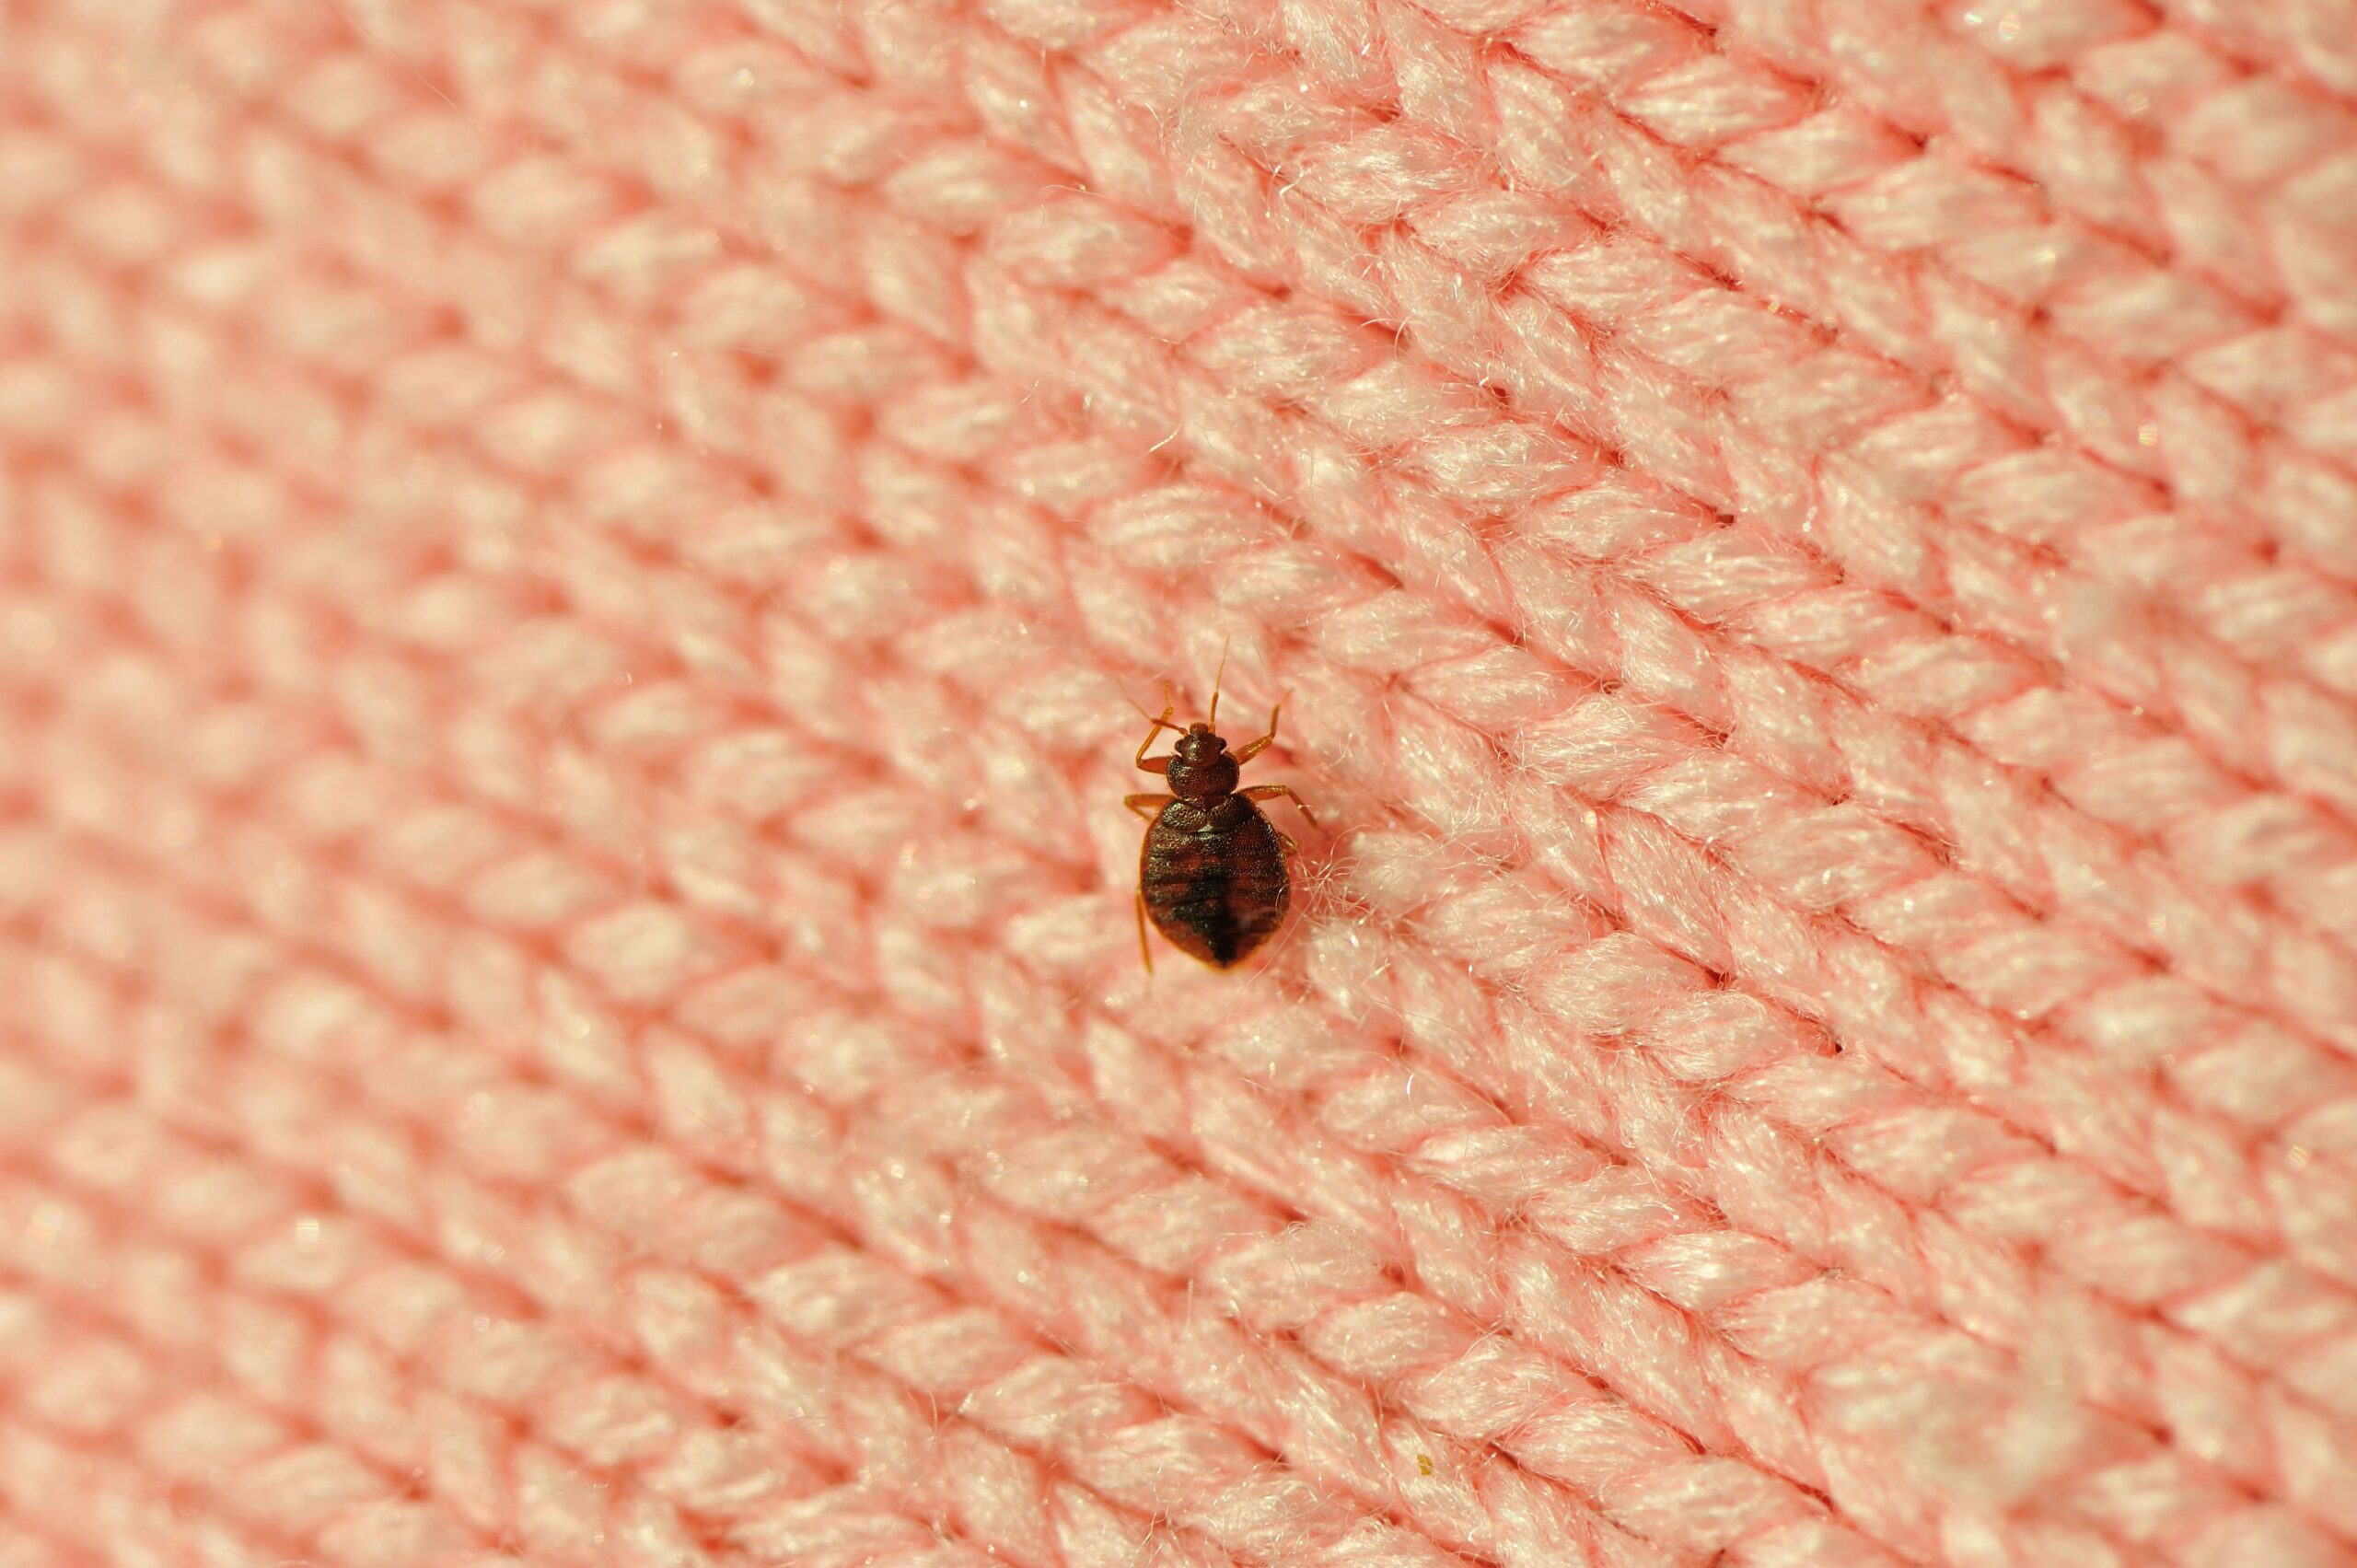 Single Bed Bug On A Blanket Fiber Royalty Free Image 183382435 1566232422